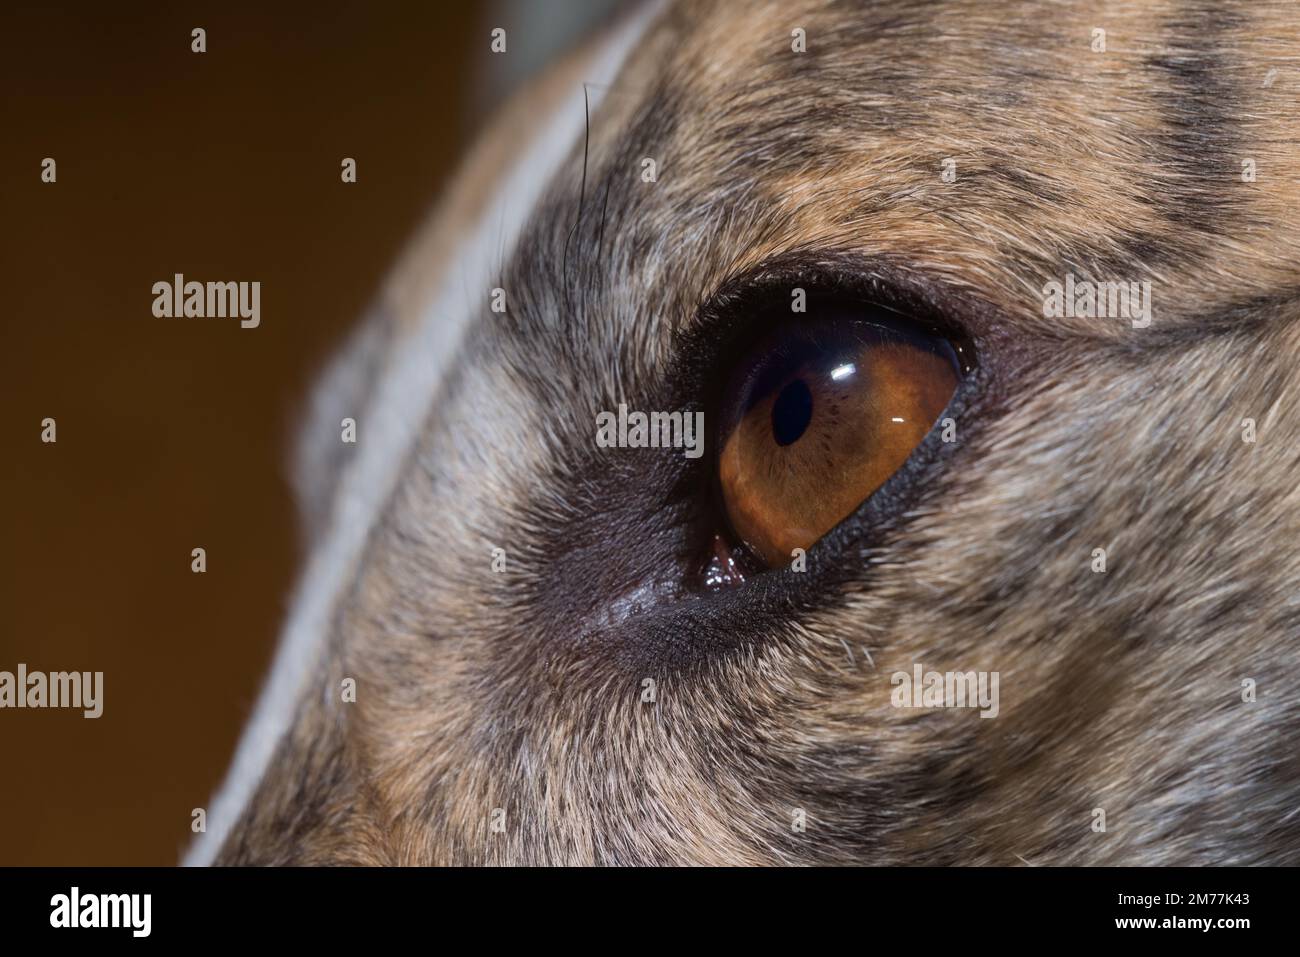 Darstellung der dunkelbraunen Iris des Windhunds-Auges. Anatomie einschließlich Krypten, Radialfurchen, Pigmentschmuck, Pupillenbereich und Ziliarbereich sind sichtbar Stockfoto